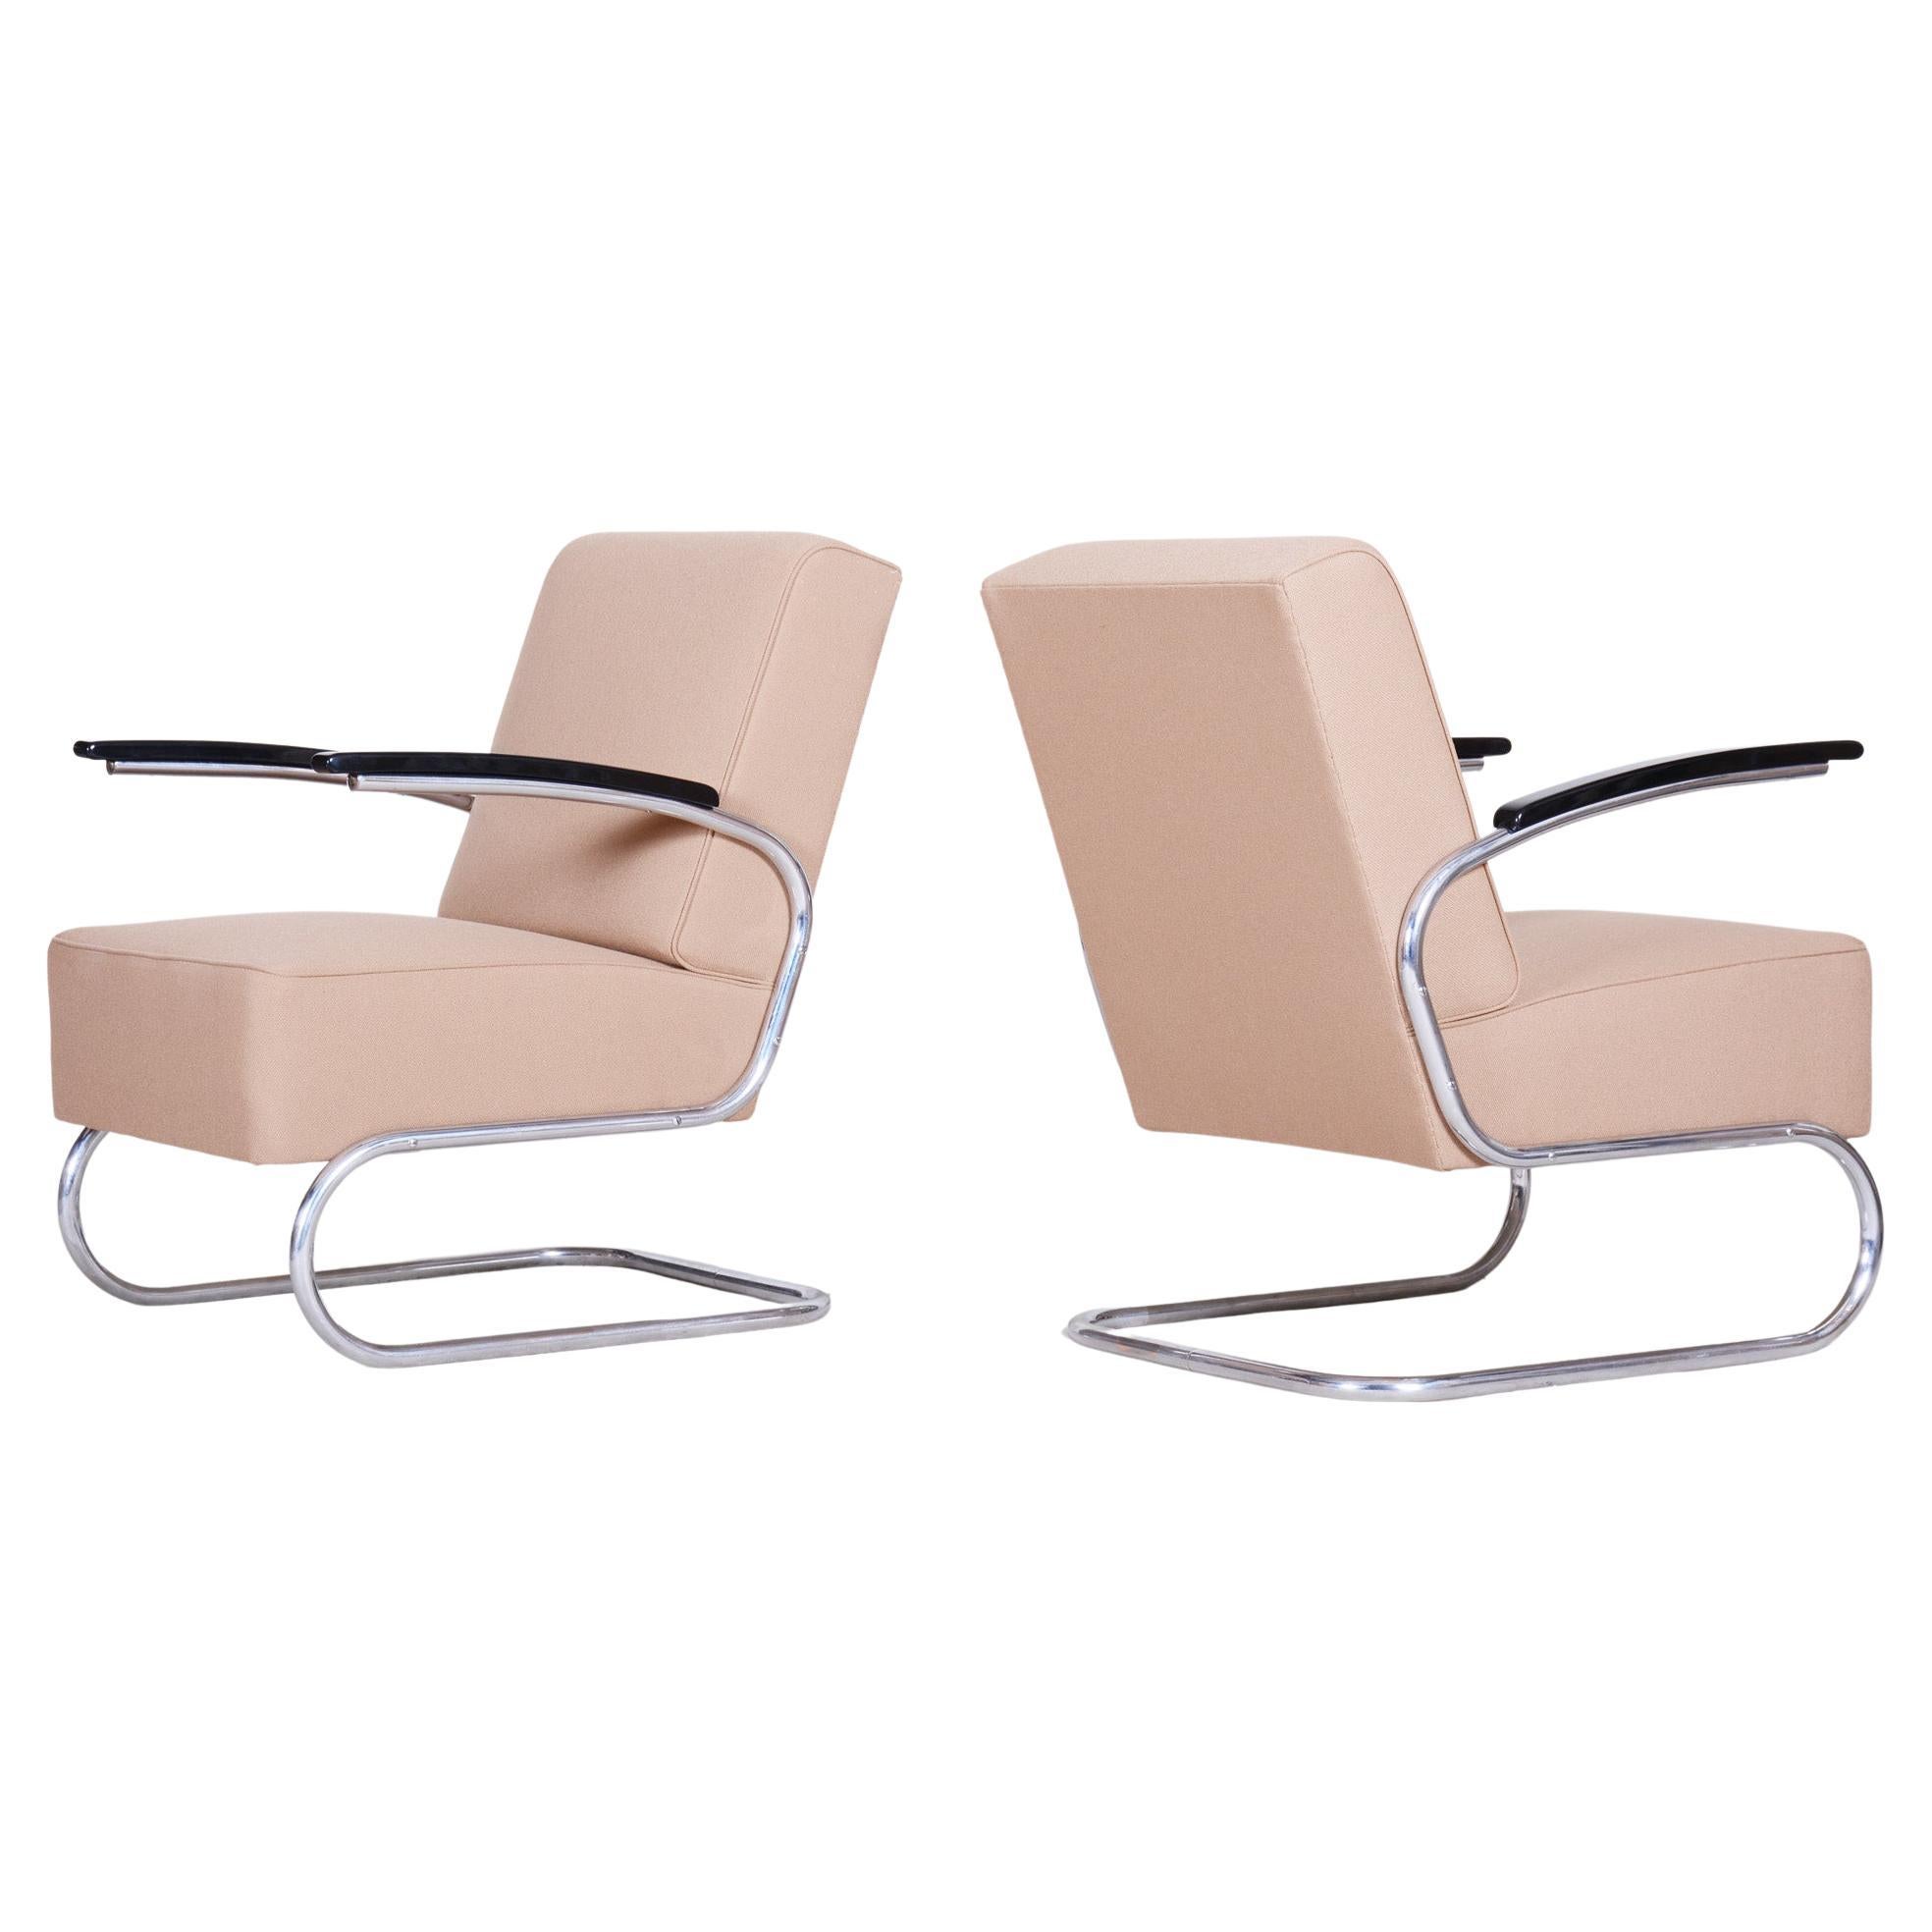 Verchromte Bauhaus-Sessel entworfen von Mcke Melder, komplett neu lackiert, 1930er Jahre